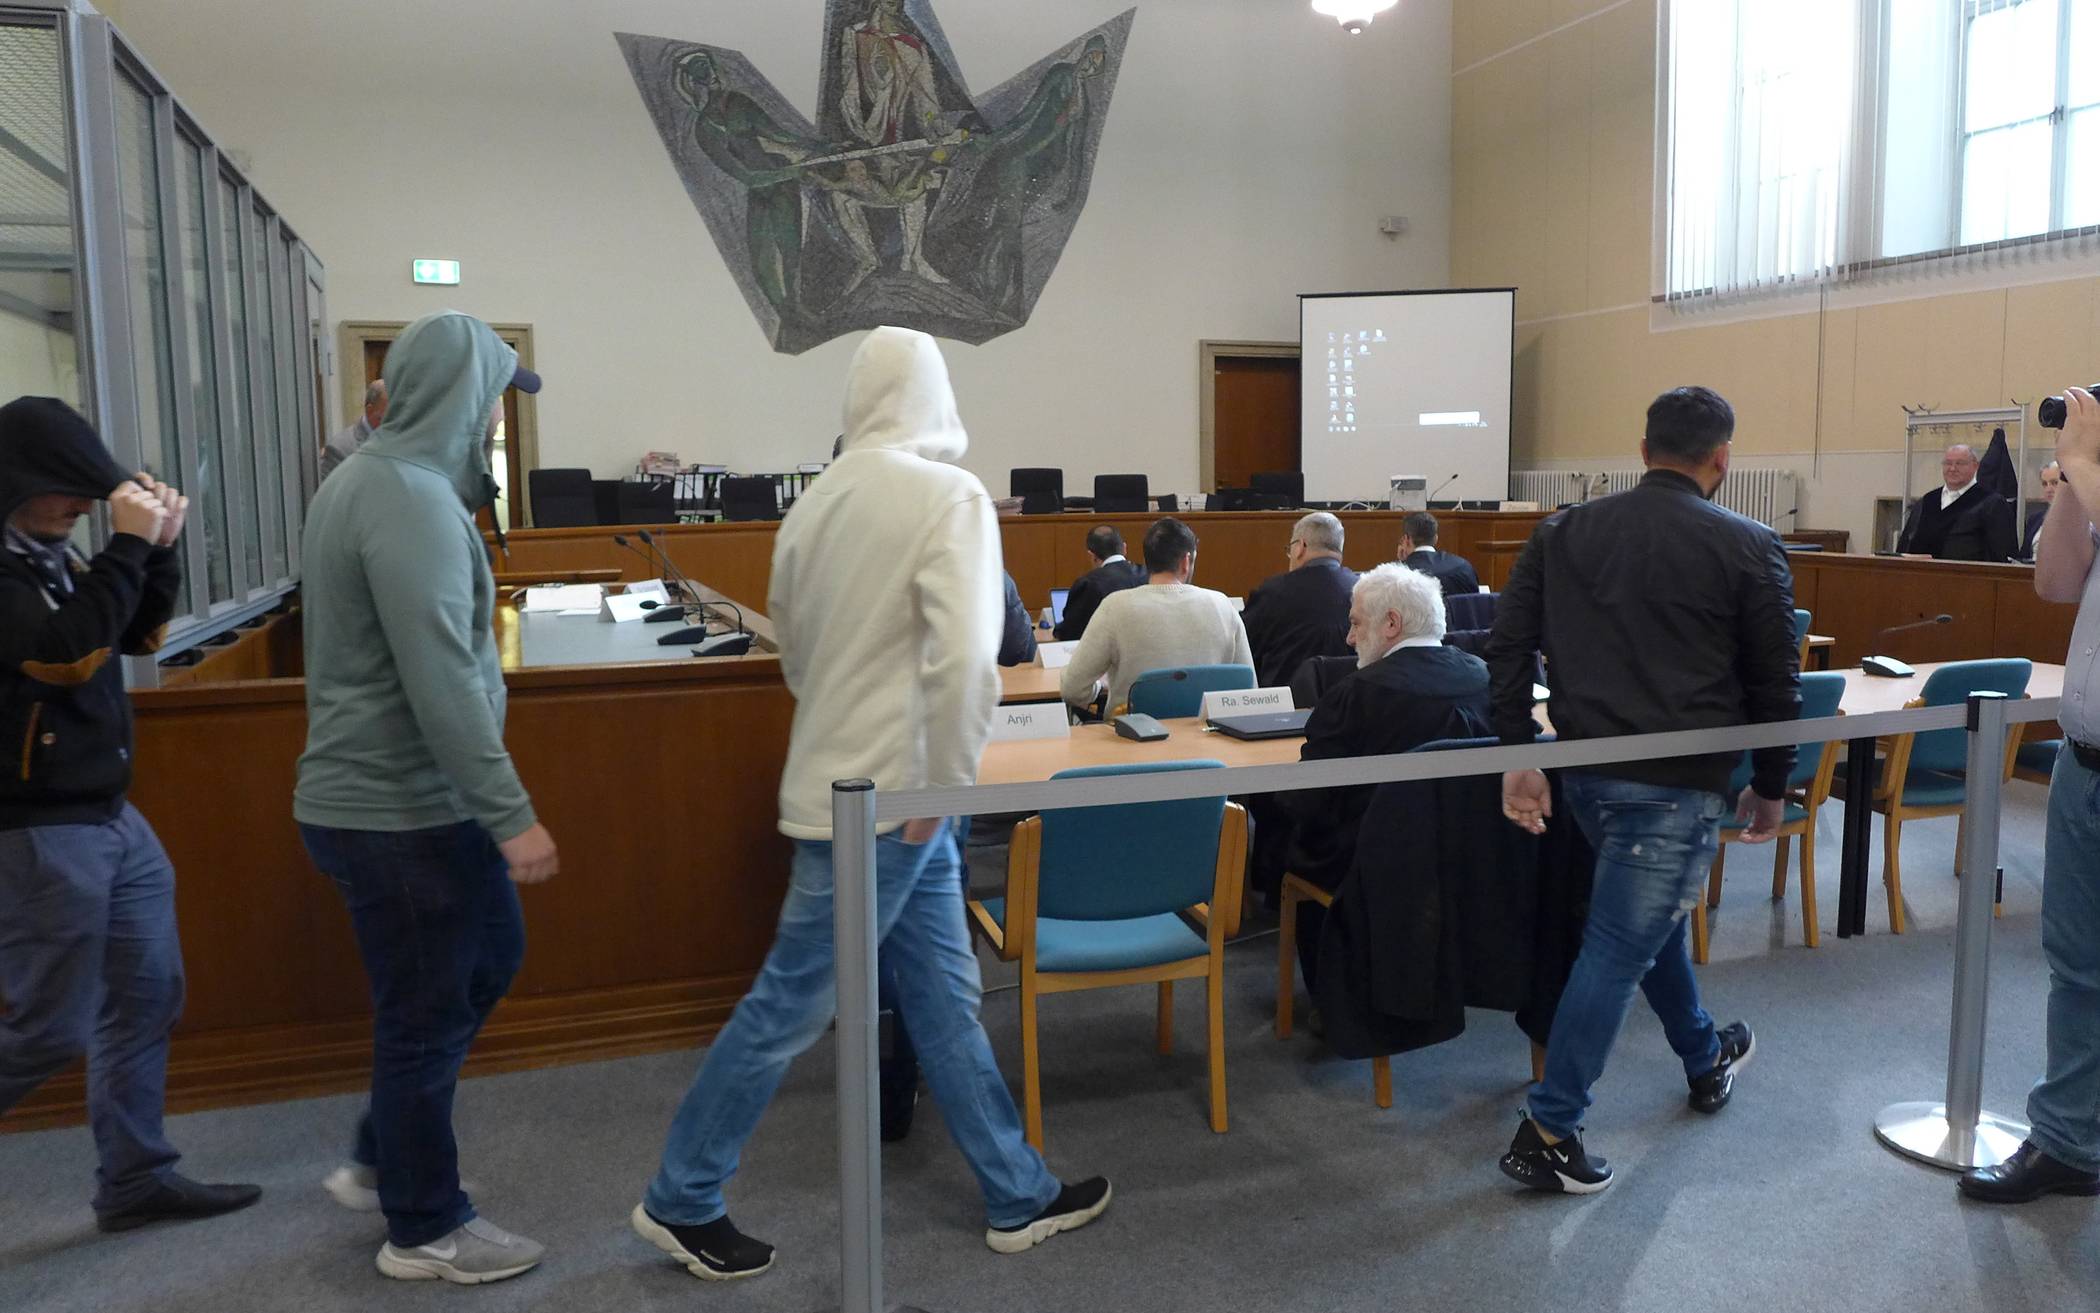  Einige der Angeklagten vor Prozessbeginn letzte Woche im Wuppertaler Landgericht. Heute wurden die Plädoyers gehalten.  